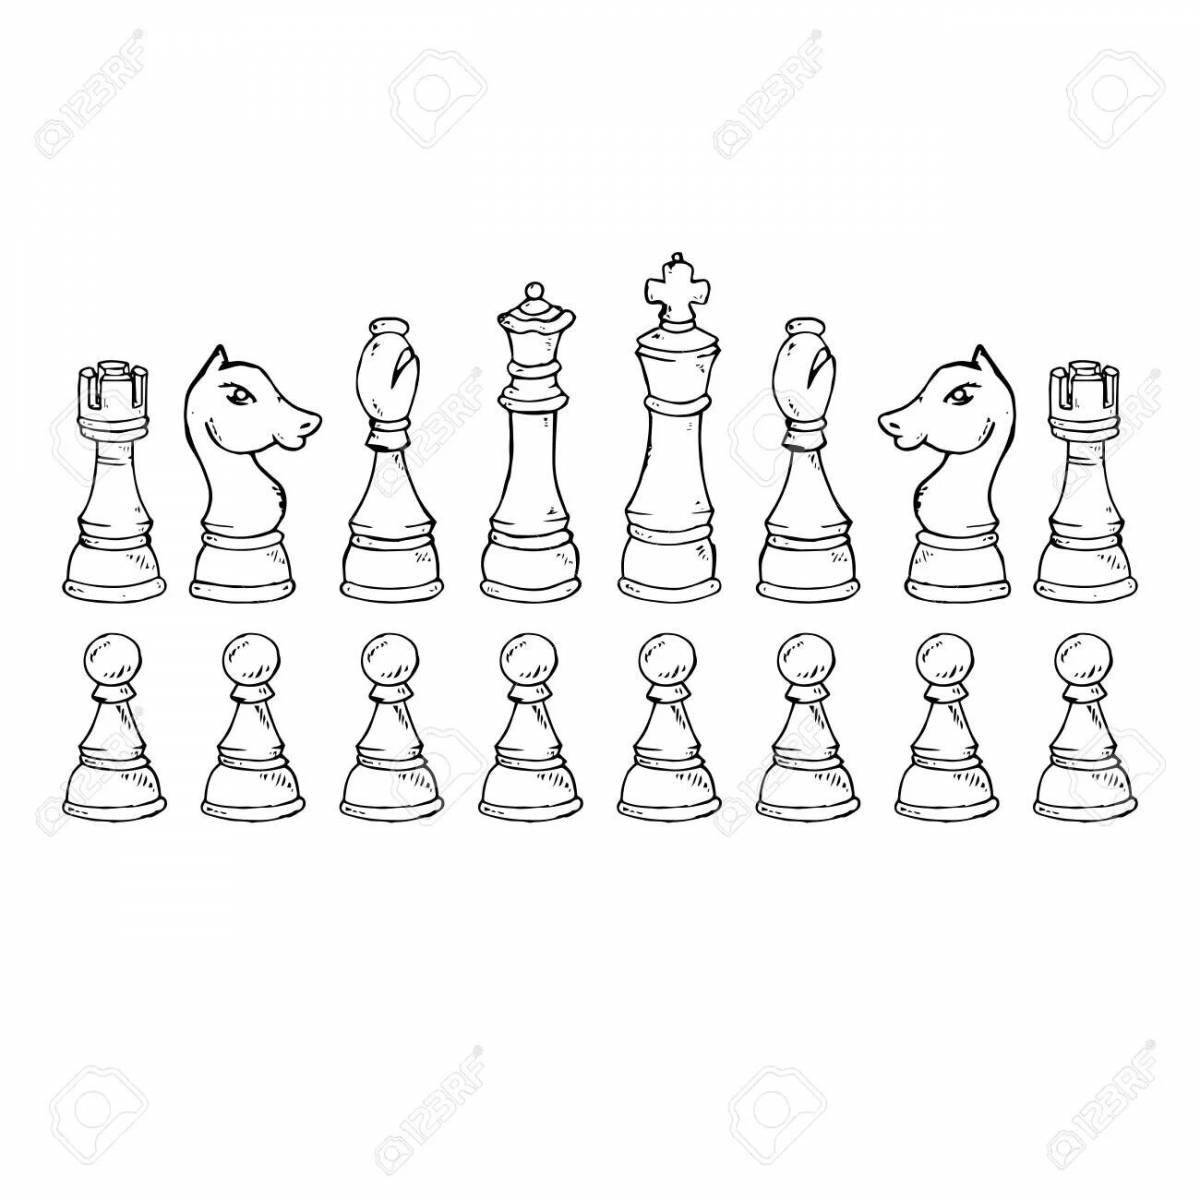 Раскраска экзотические шахматные фигуры